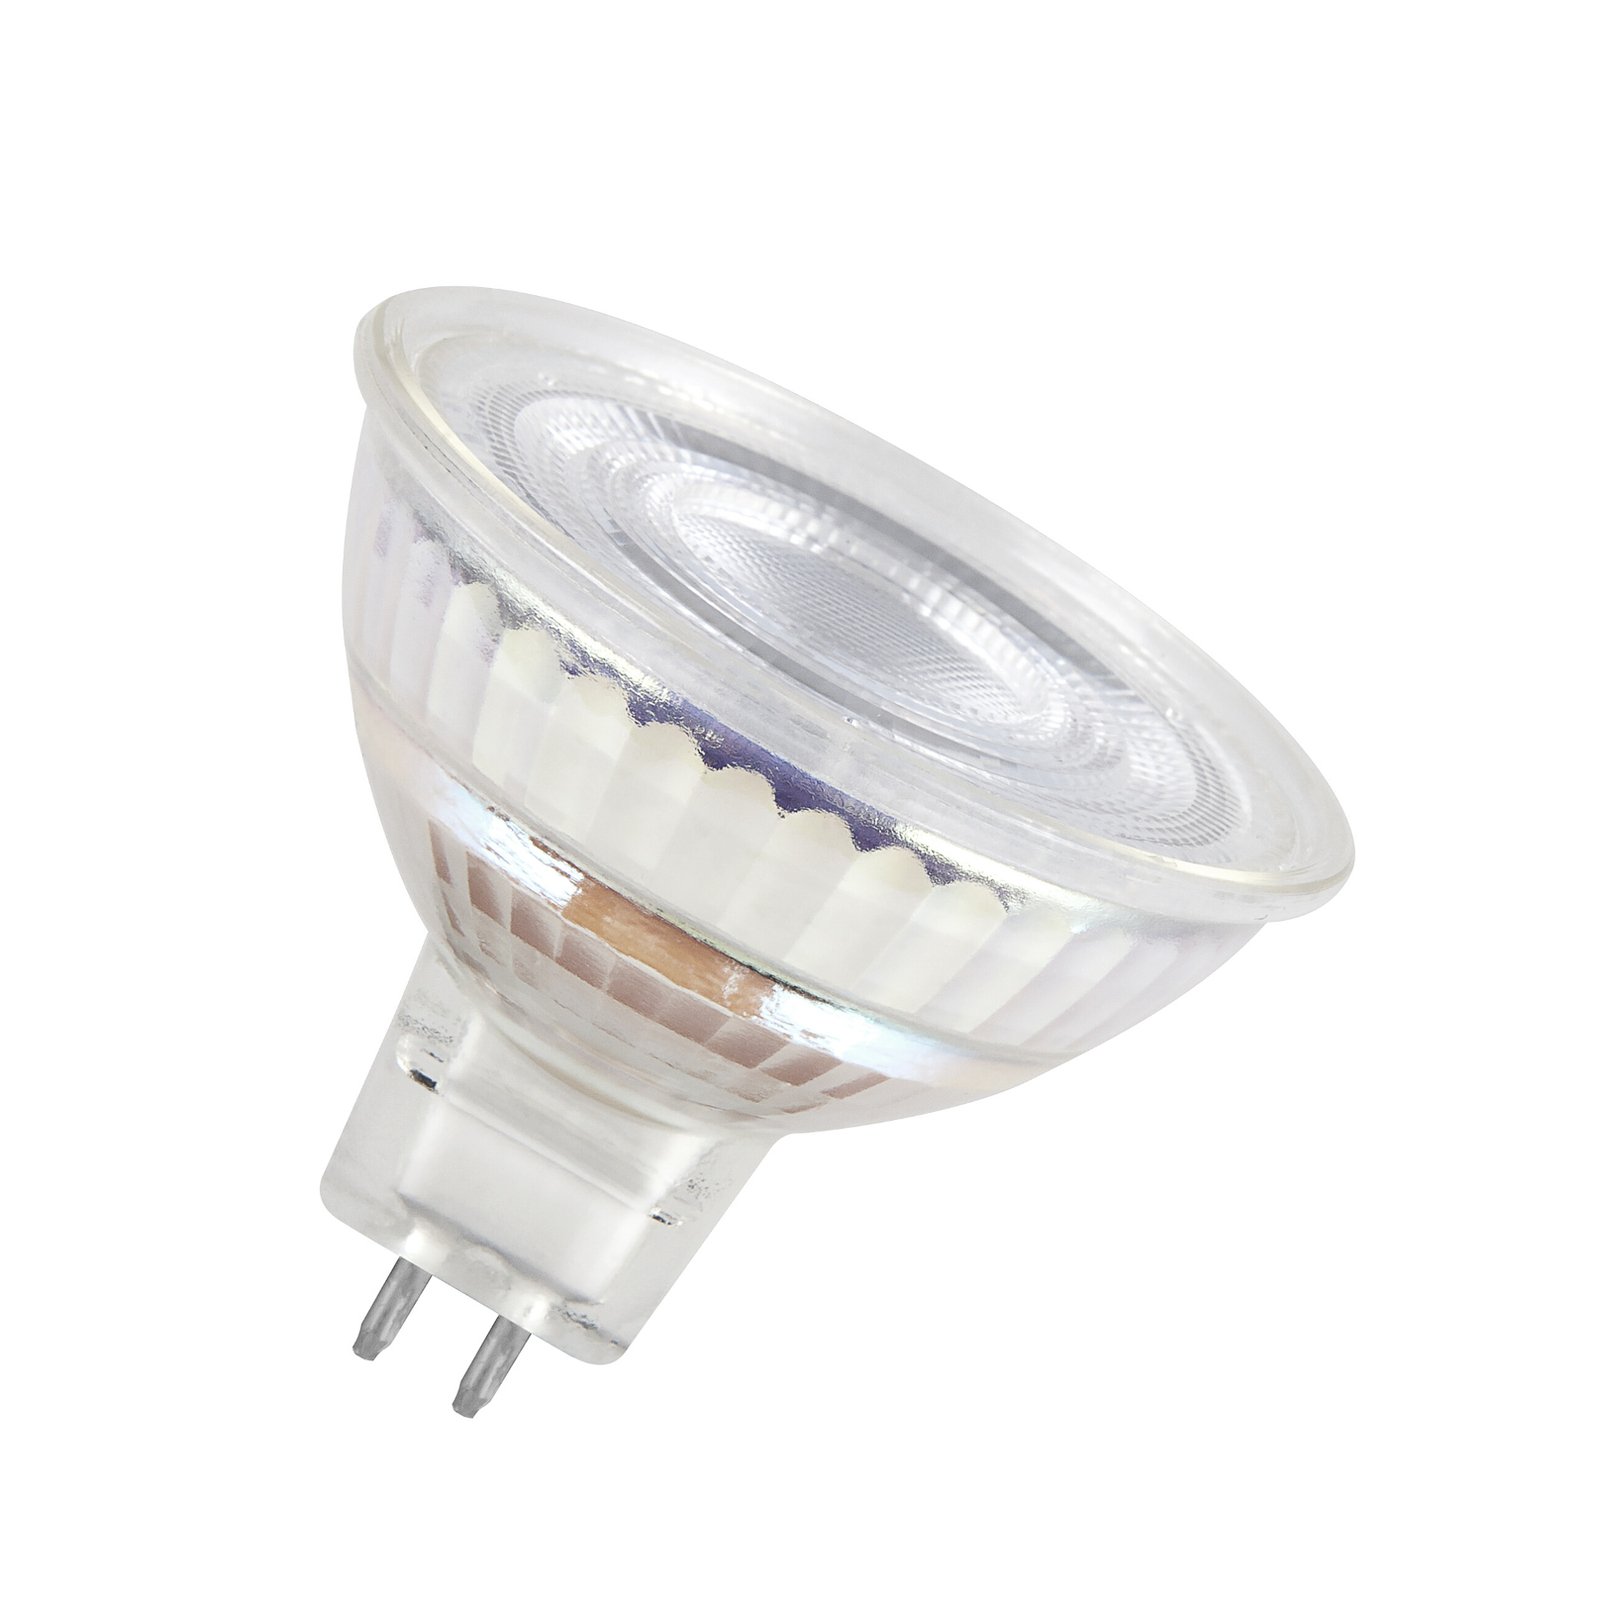 OSRAM LED bulb, GU5.3, 4.3 W, 12 V, 2,700 K, 120°